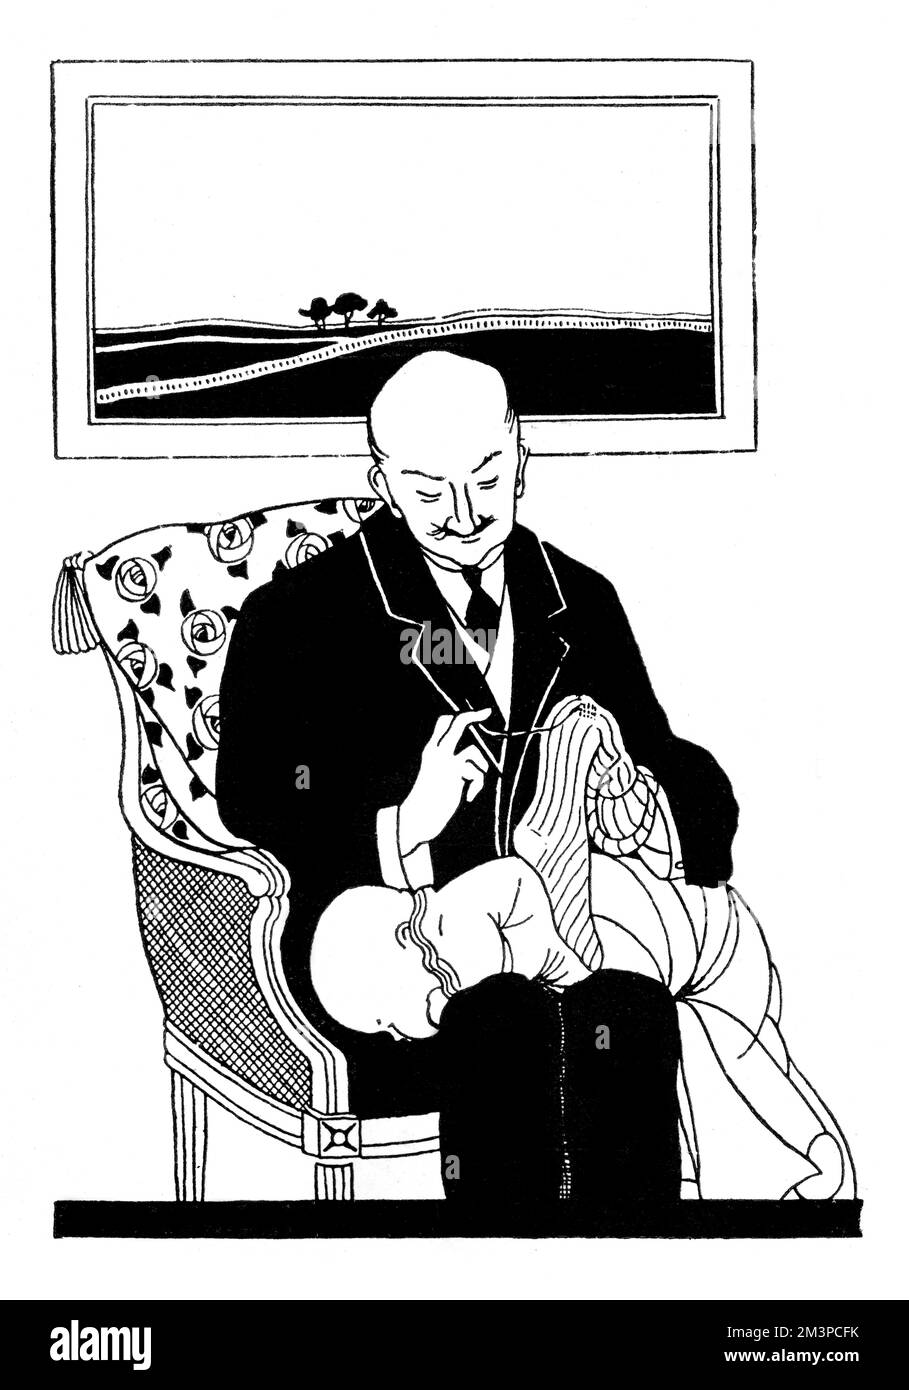 Ein Mann mittleren Alters, der im Socken- und Babyschaukeln tätig ist - eine Rollenumkehr im Ersten Weltkrieg. Datum: 1917 Stockfoto